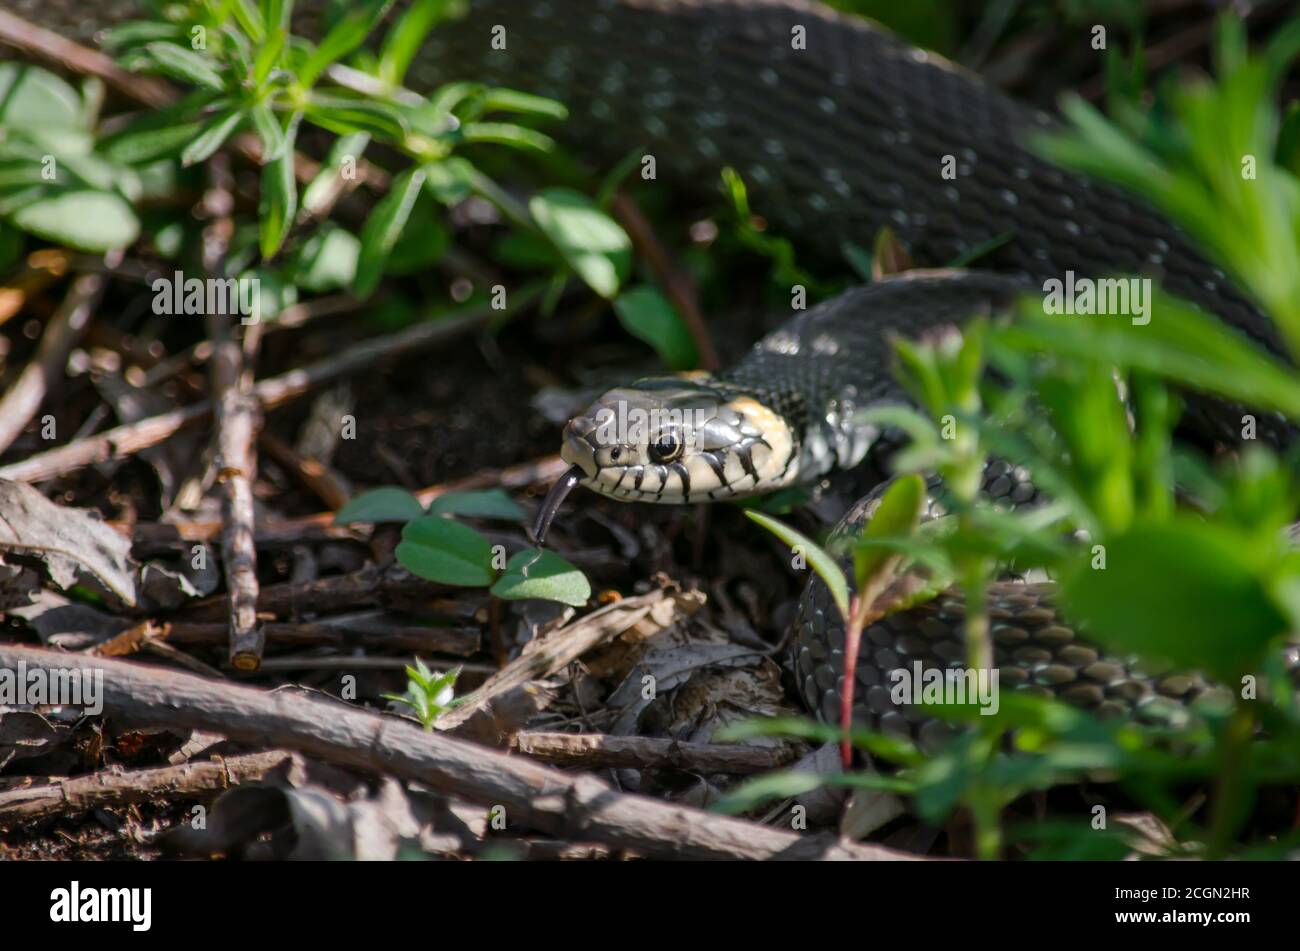 Serpente d'erba che vive in un prato. Fauna dell'Ucraina. Profondità di campo poco profonda, primo piano. Foto Stock